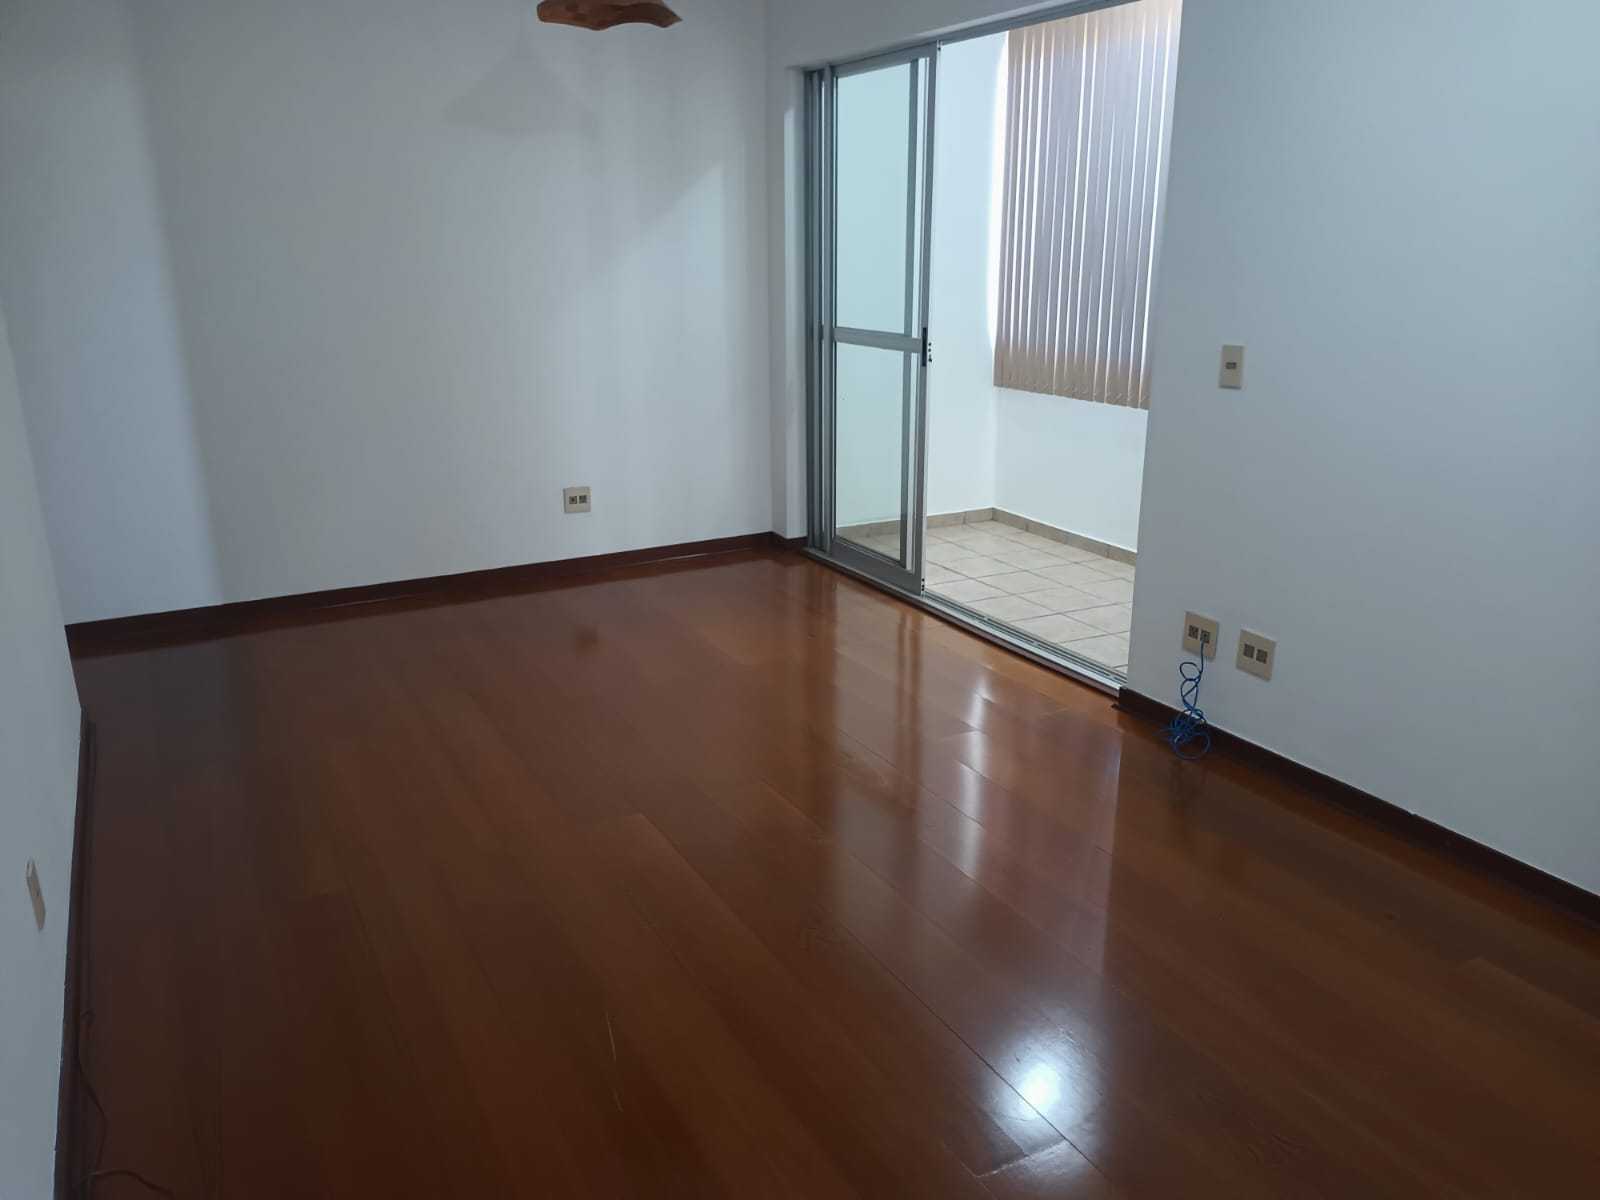 Apartamento, 3 quartos, 78 m² - Foto 3